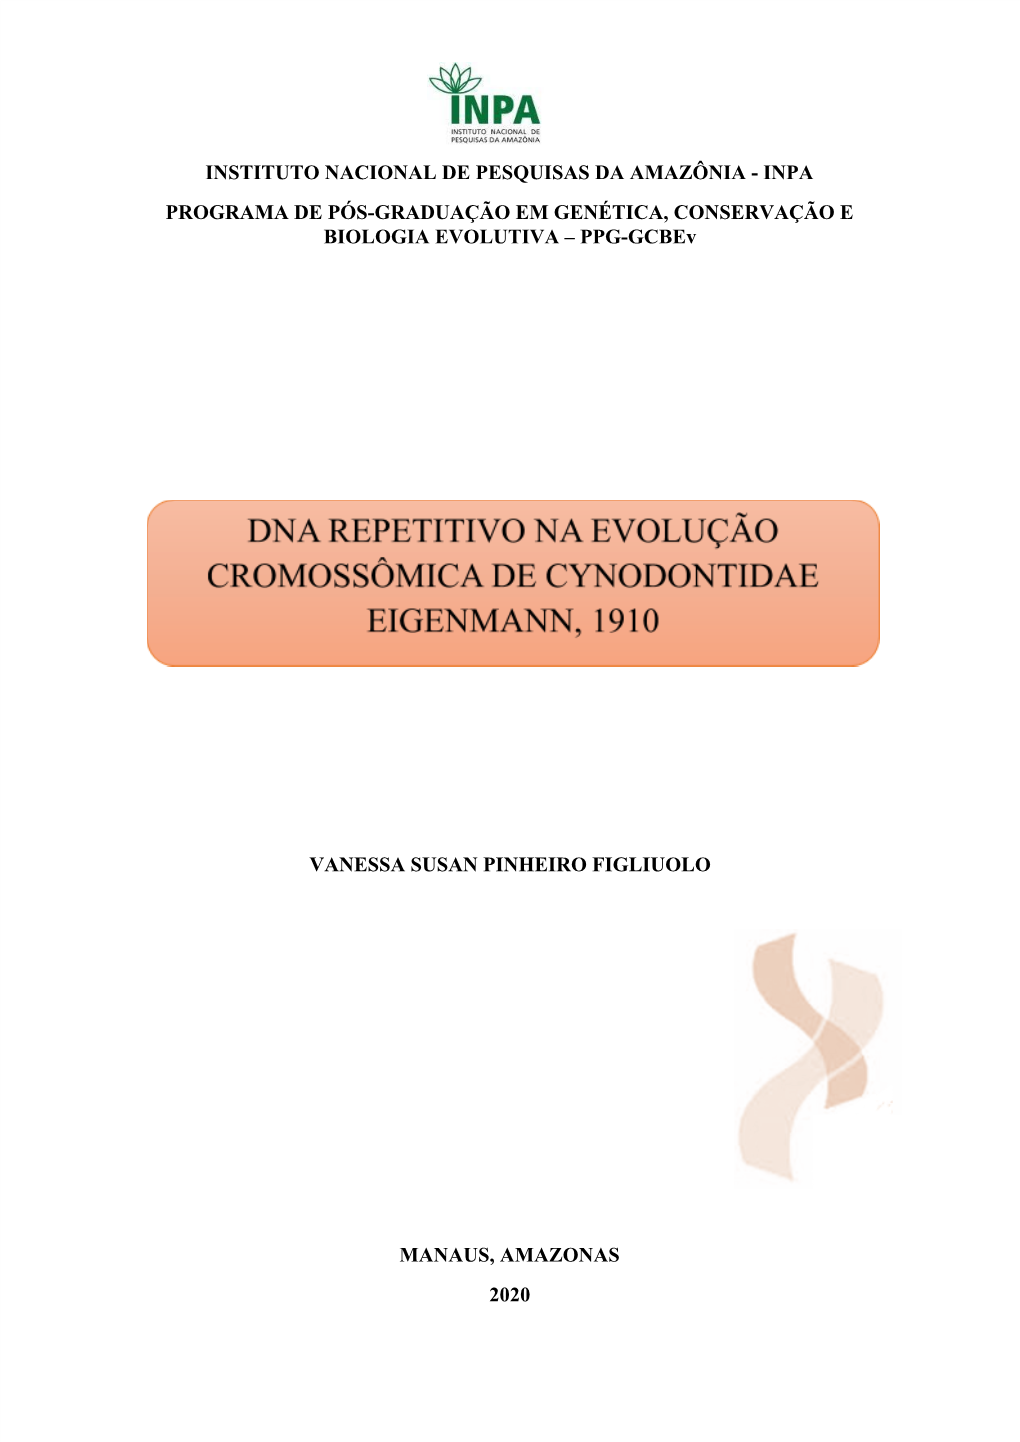 INPA PROGRAMA DE PÓS-GRADUAÇÃO EM GENÉTICA, CONSERVAÇÃO E BIOLOGIA EVOLUTIVA – PPG-Gcbev